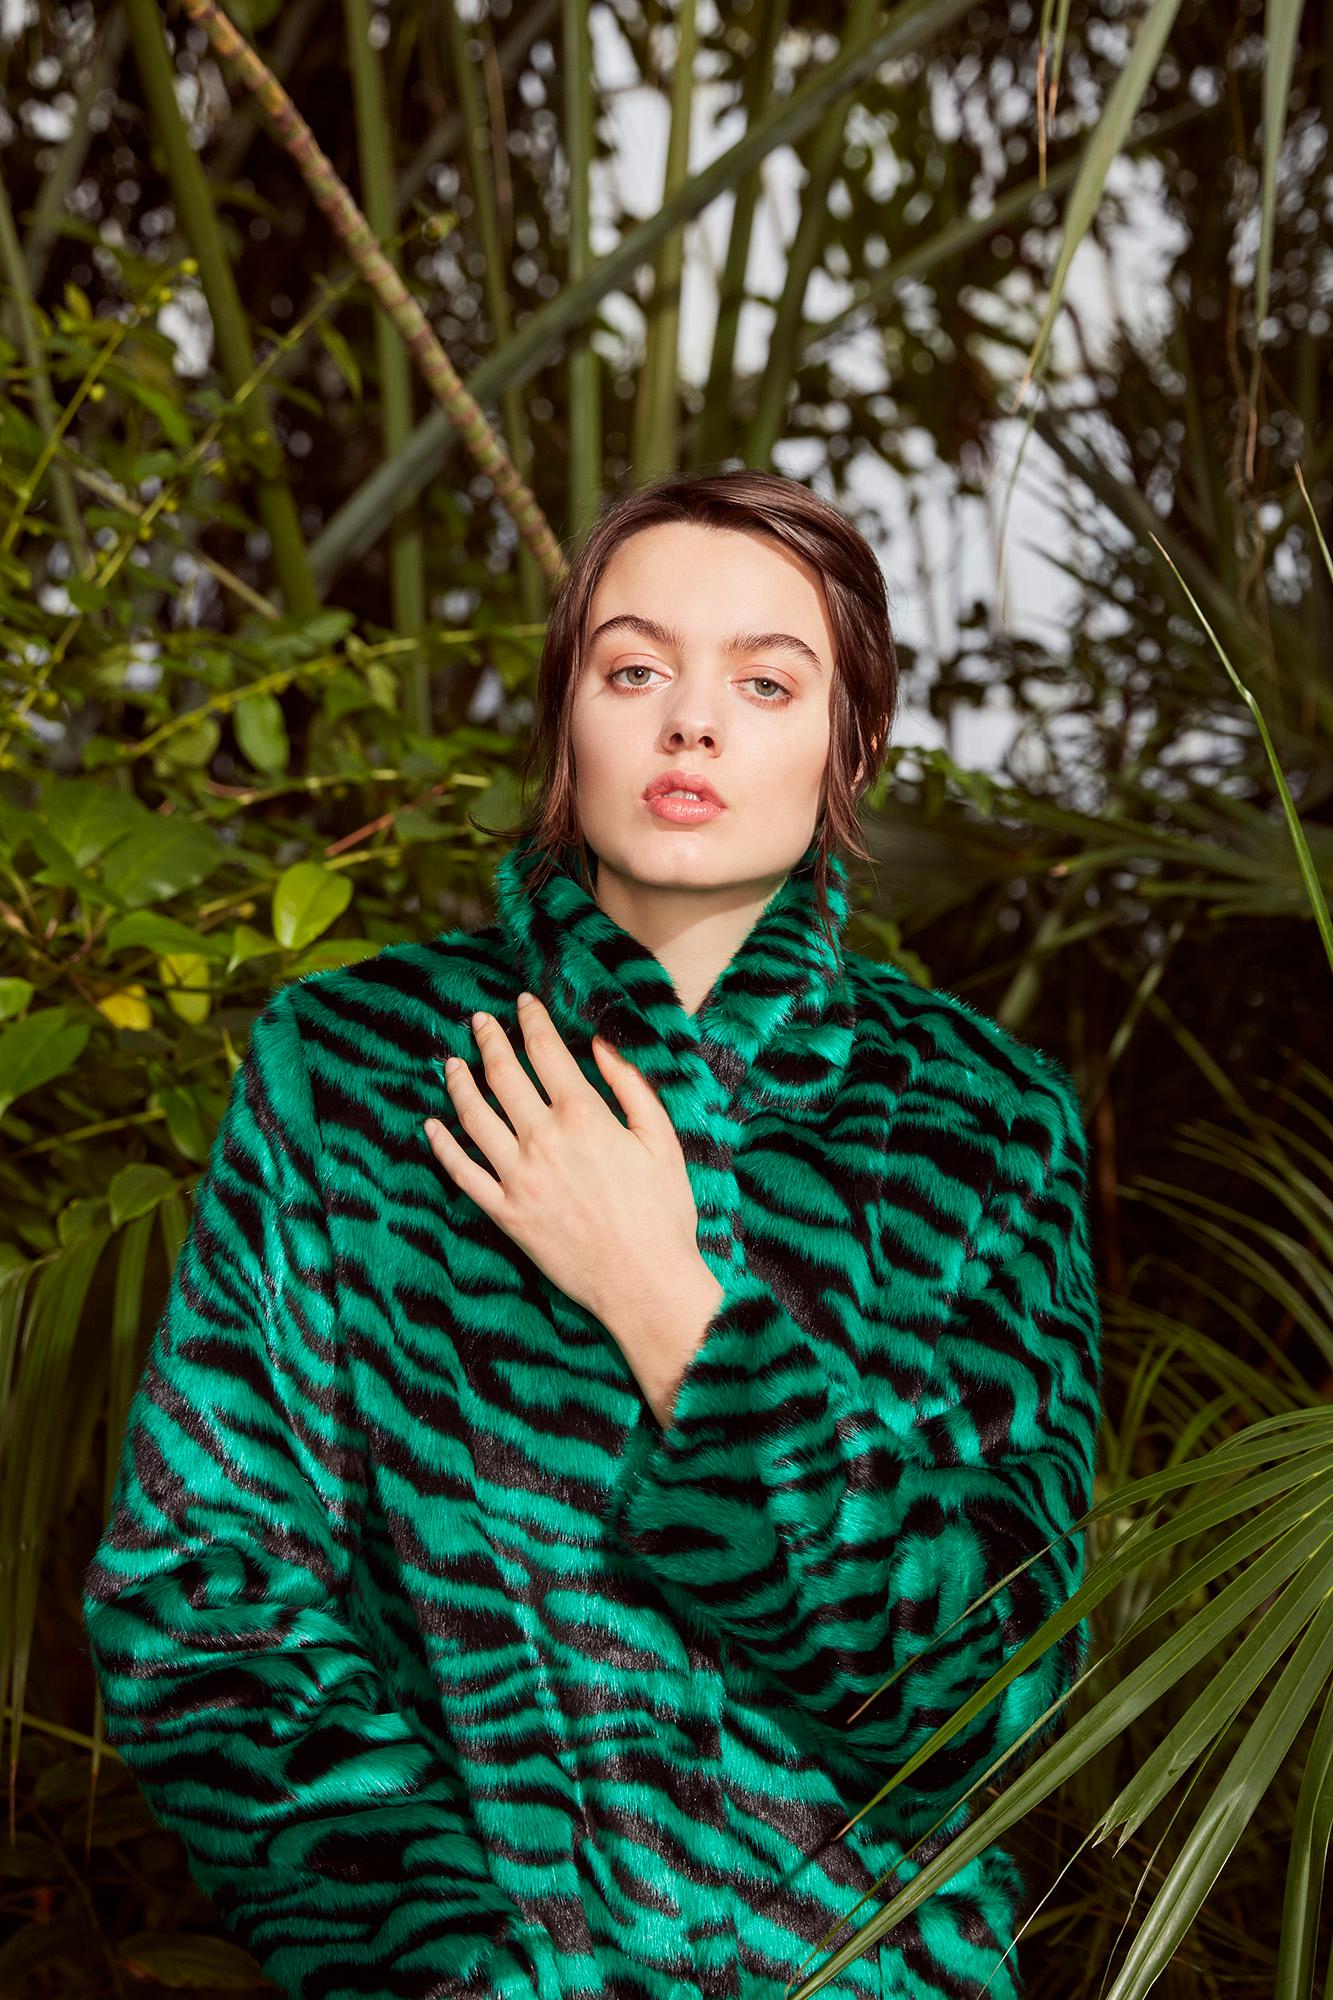 Verheyen London Esmeralda Faux Fur Coat in Emerald Green Zebra Print size uk 8 6